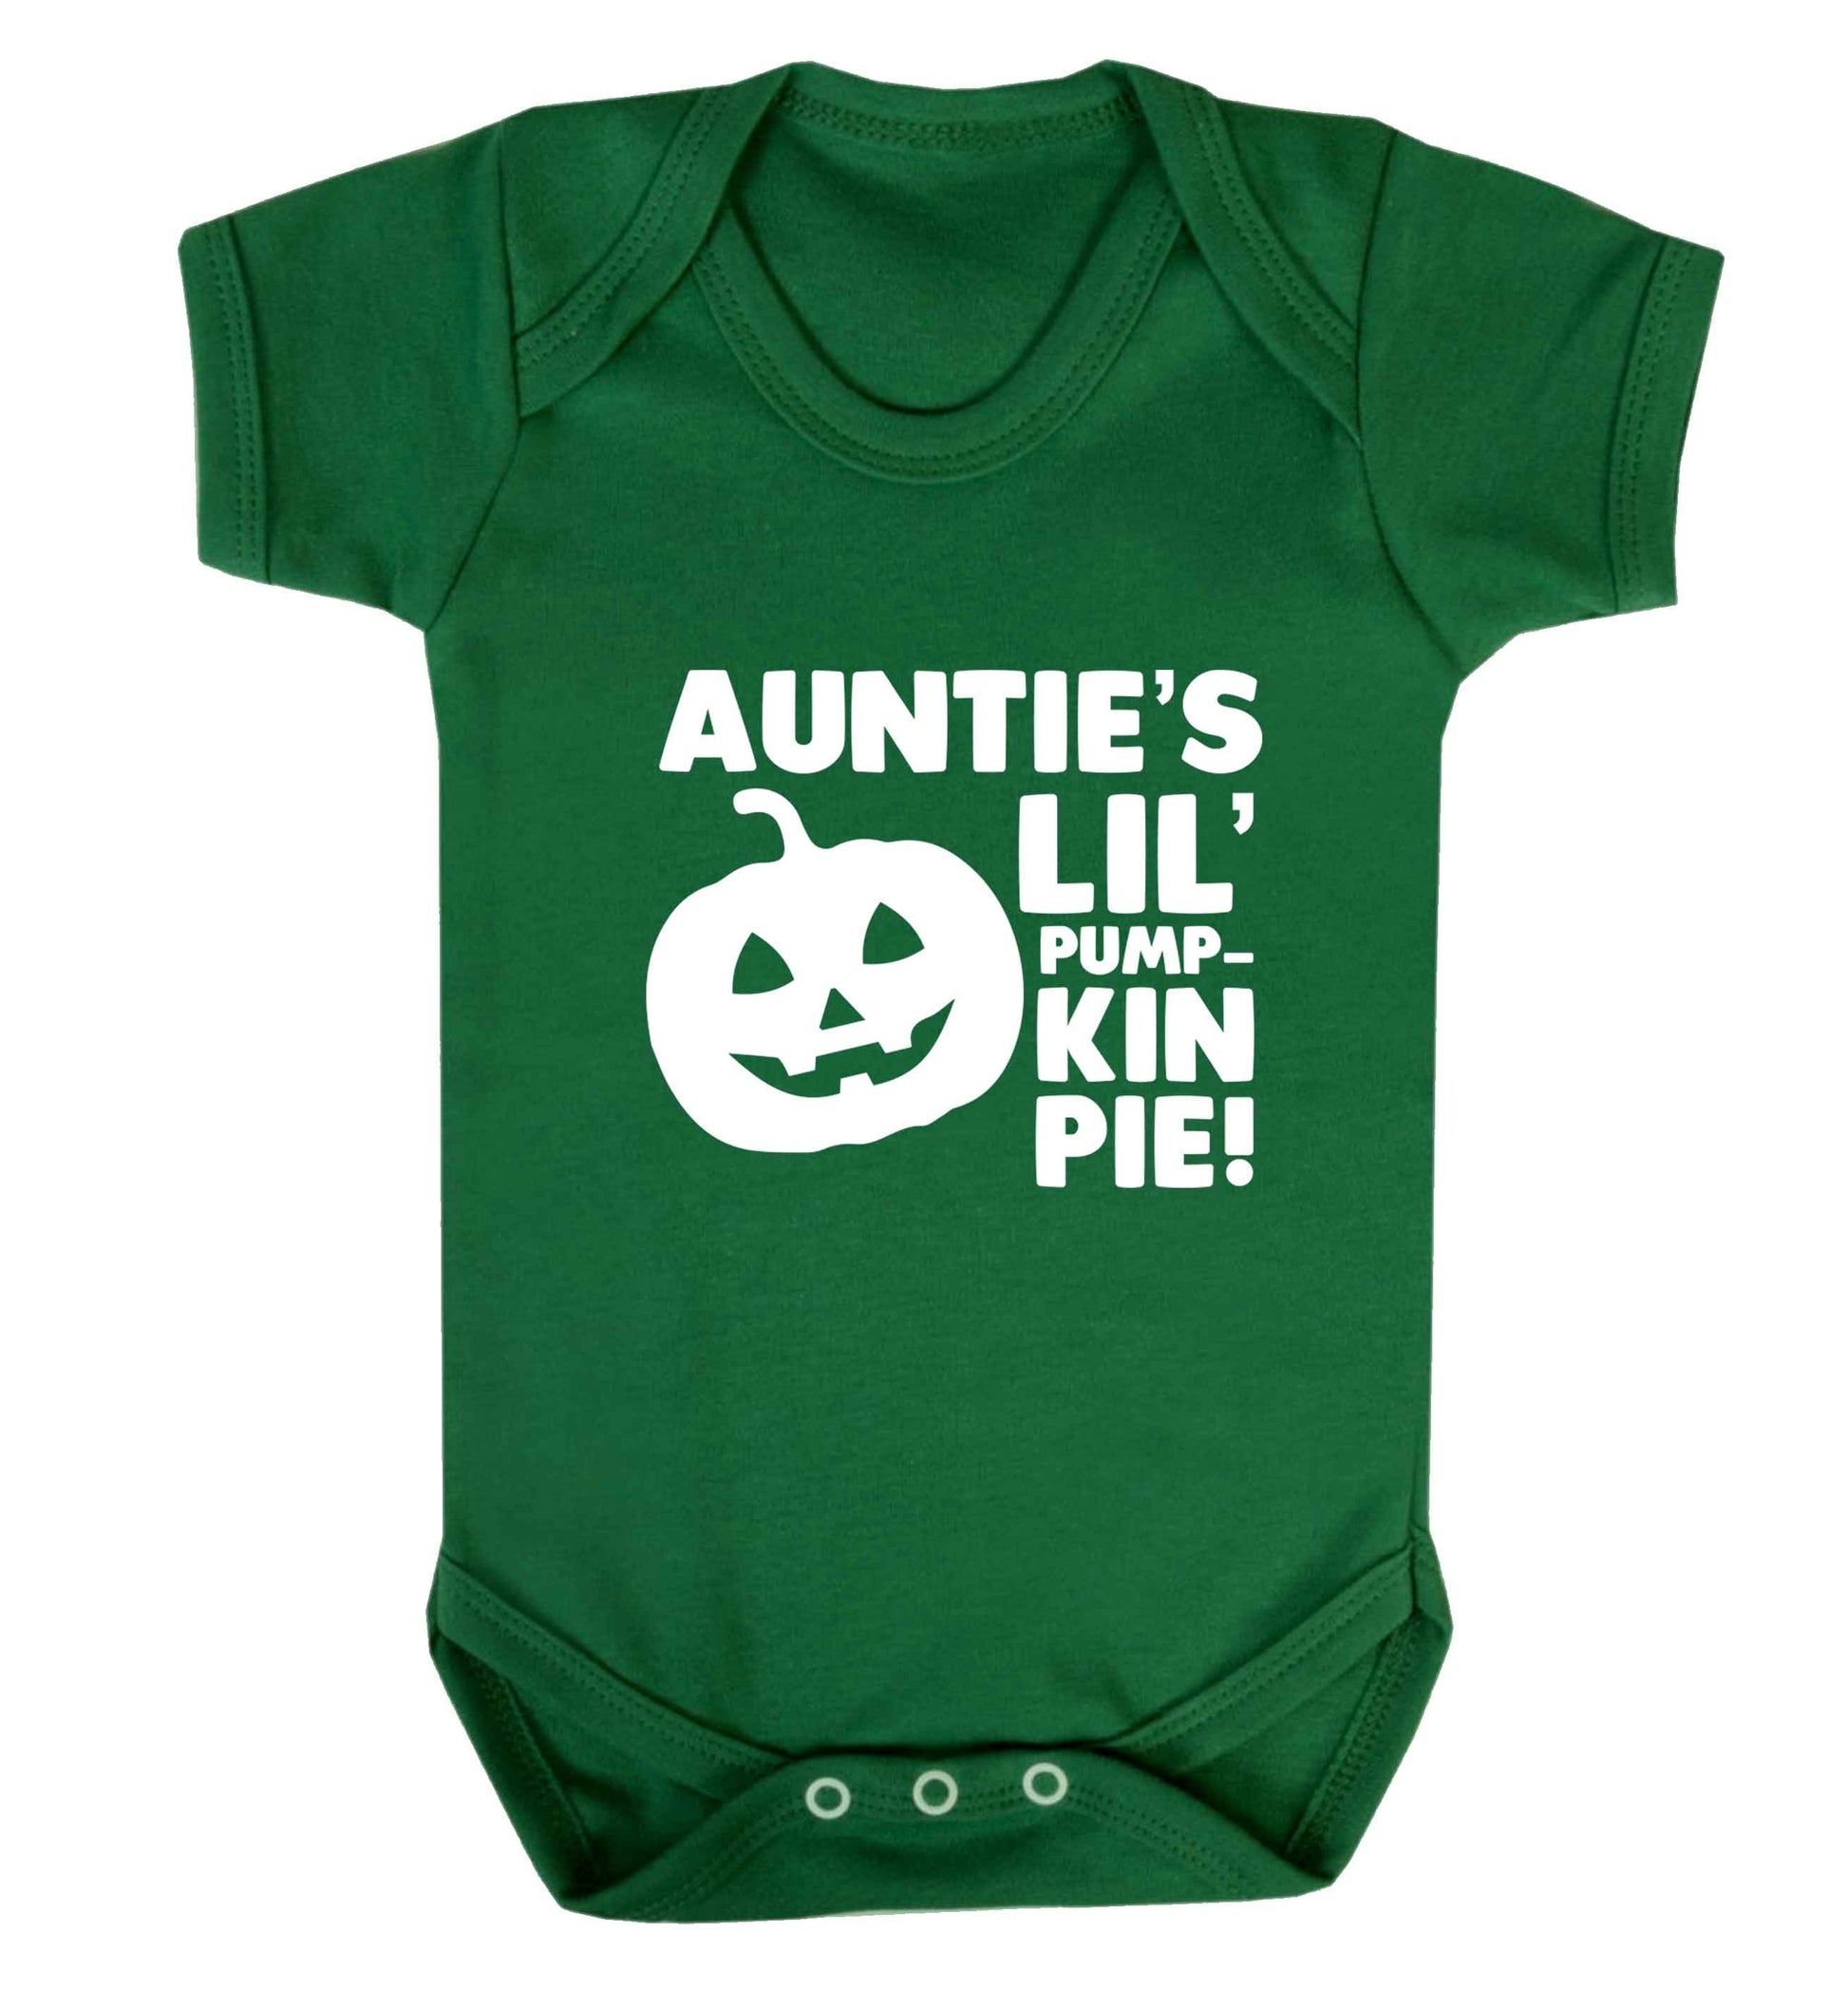 Auntie's lil' pumpkin pie baby vest green 18-24 months